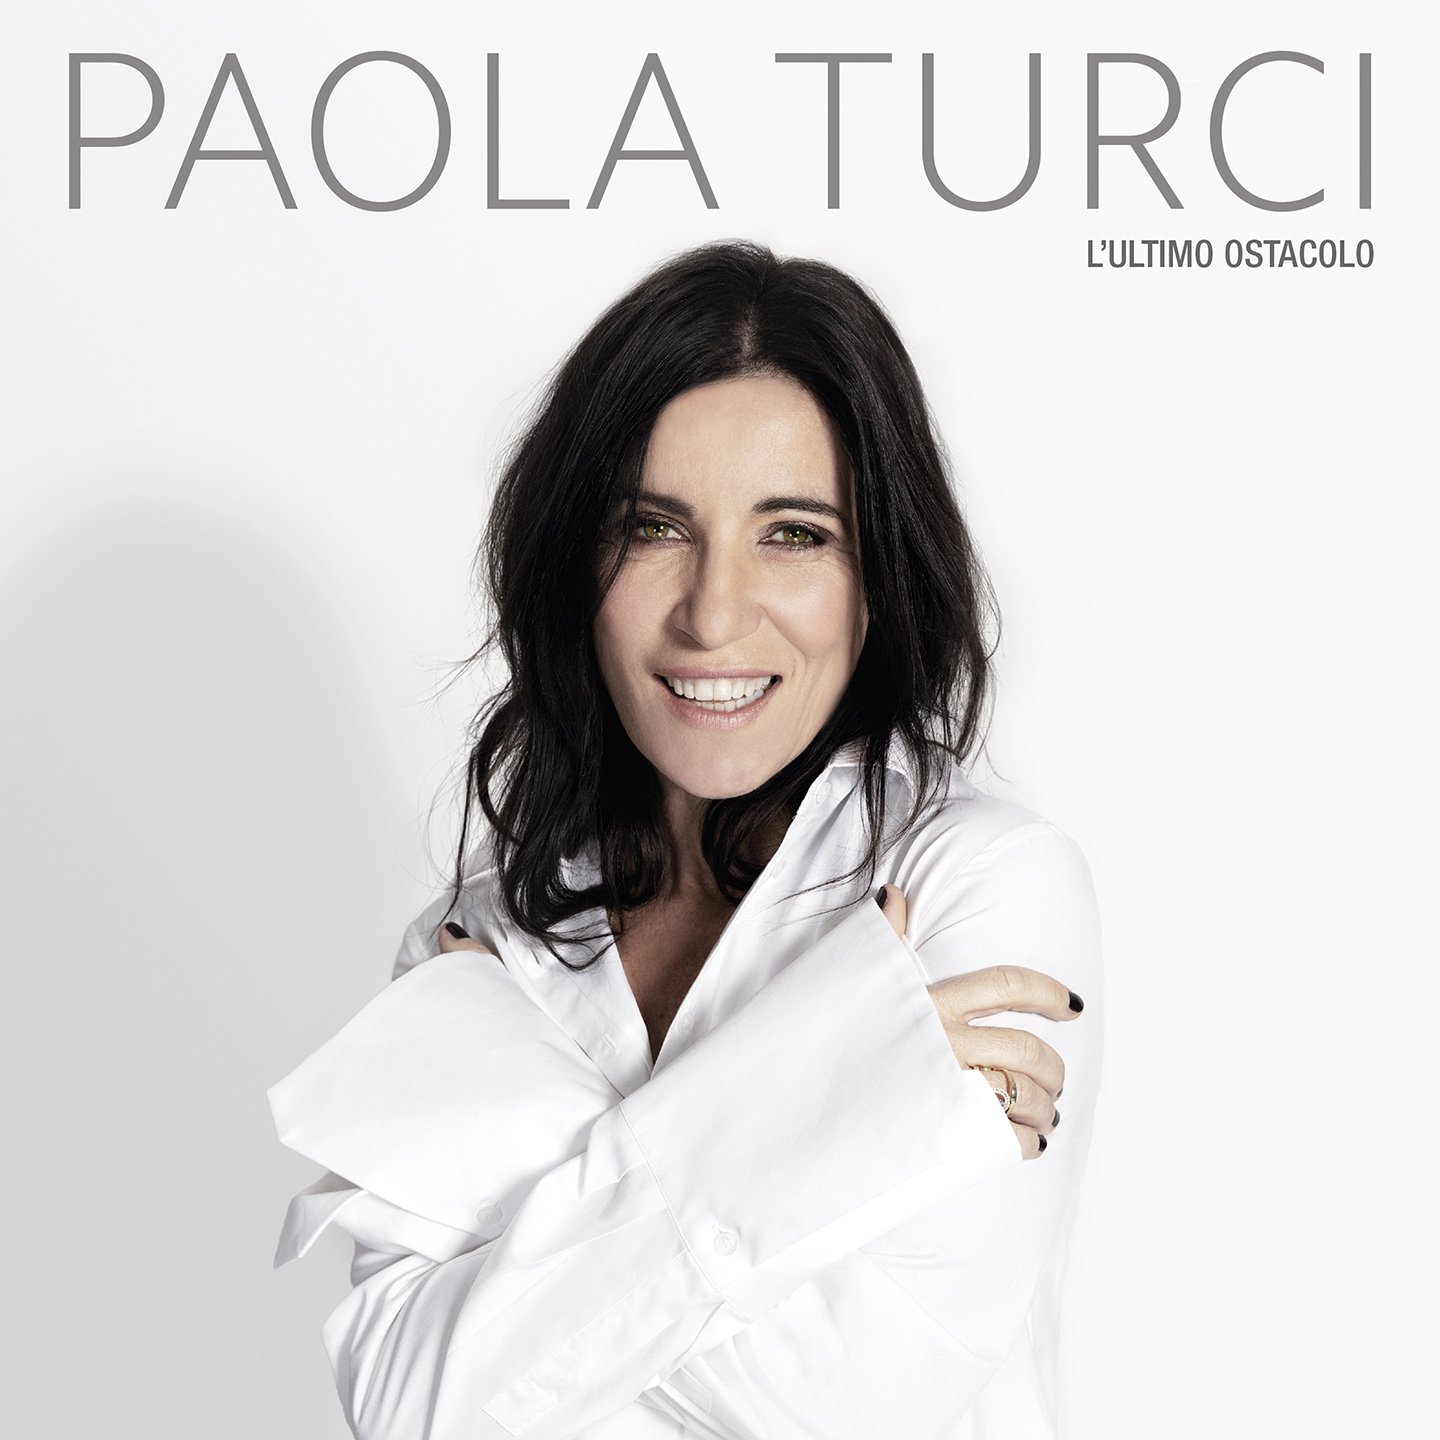 Un nuovo disco e un tour per Paola Turci dopo il festival di Sanremo